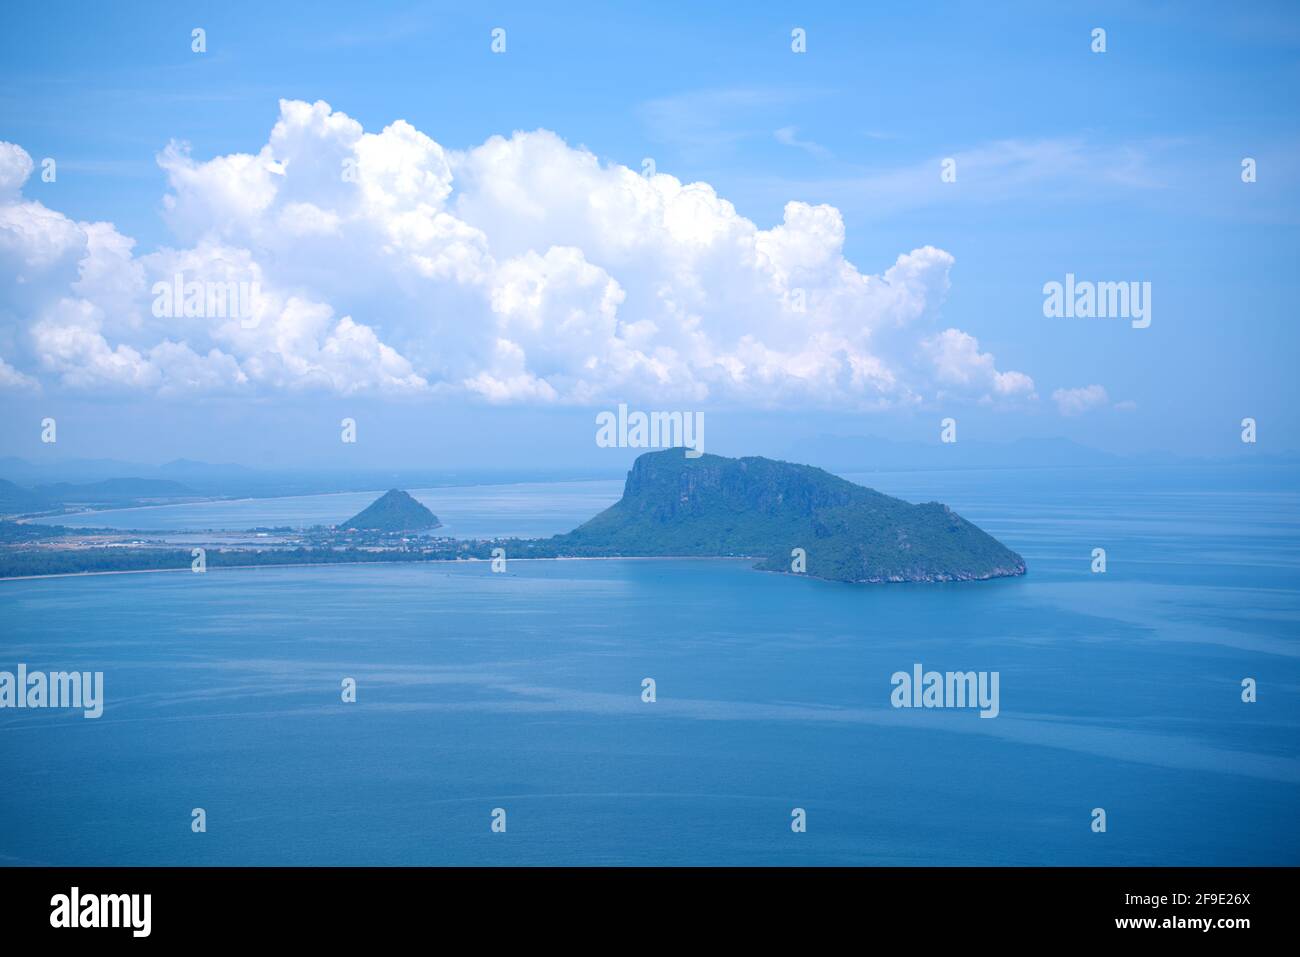 Le célèbre point de vue à Kao LOM Muak vue aérienne de la baie d'Ao Manao et de la plage d'Ao Manao. Prachuap Khiri Khan, Thaïlande, le 14 octobre 2019. Banque D'Images